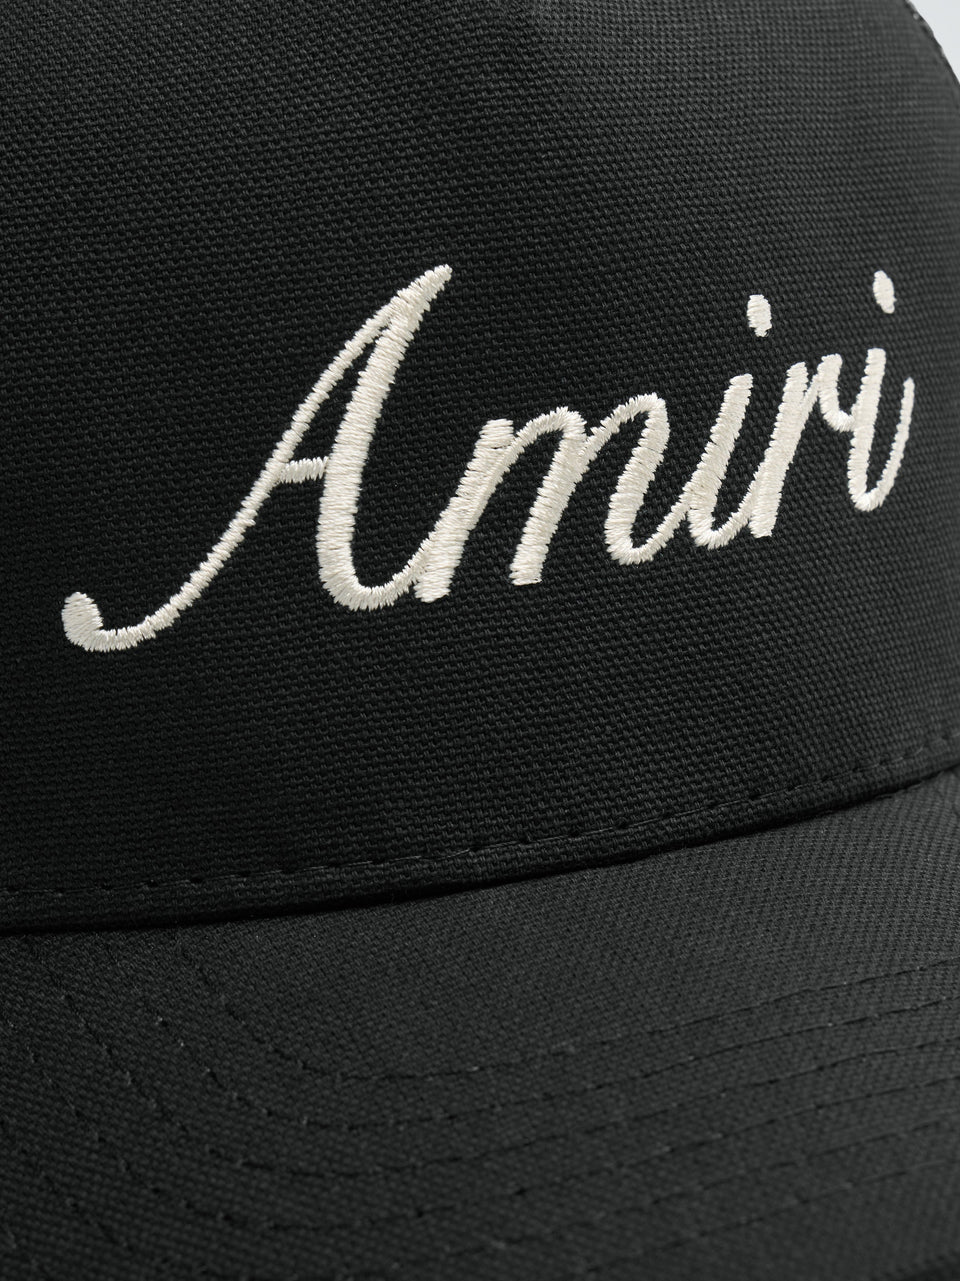 Amiri Black Script Trucker Hat